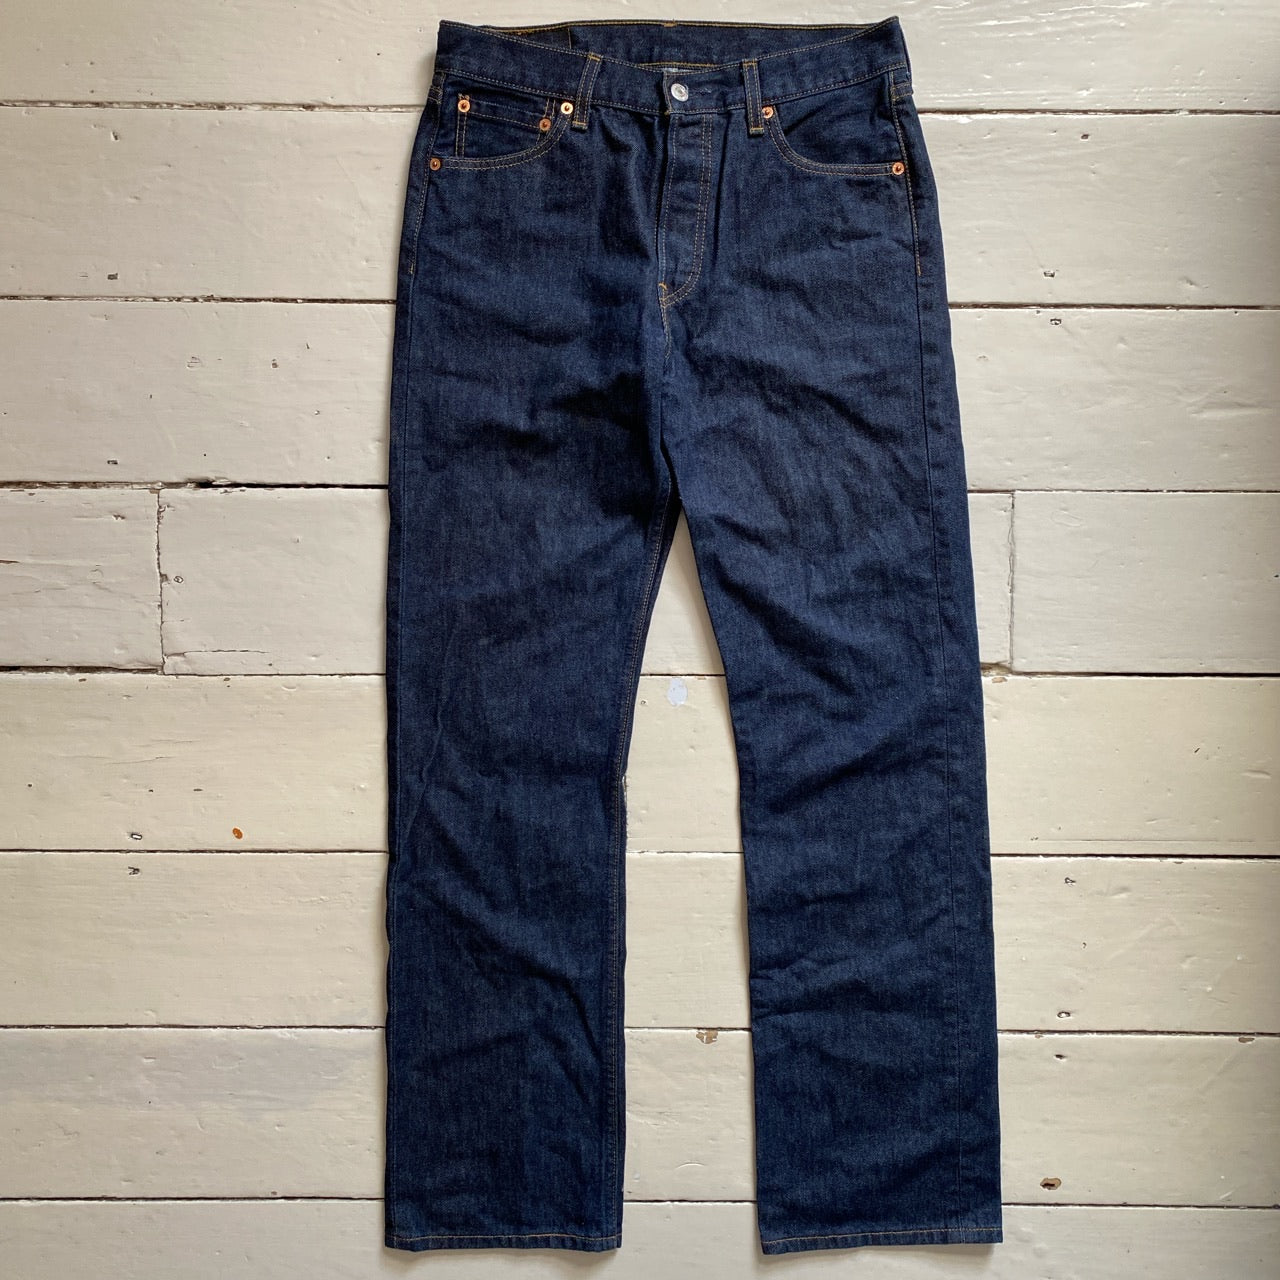 Levis 501 Blue Jeans (30/32)